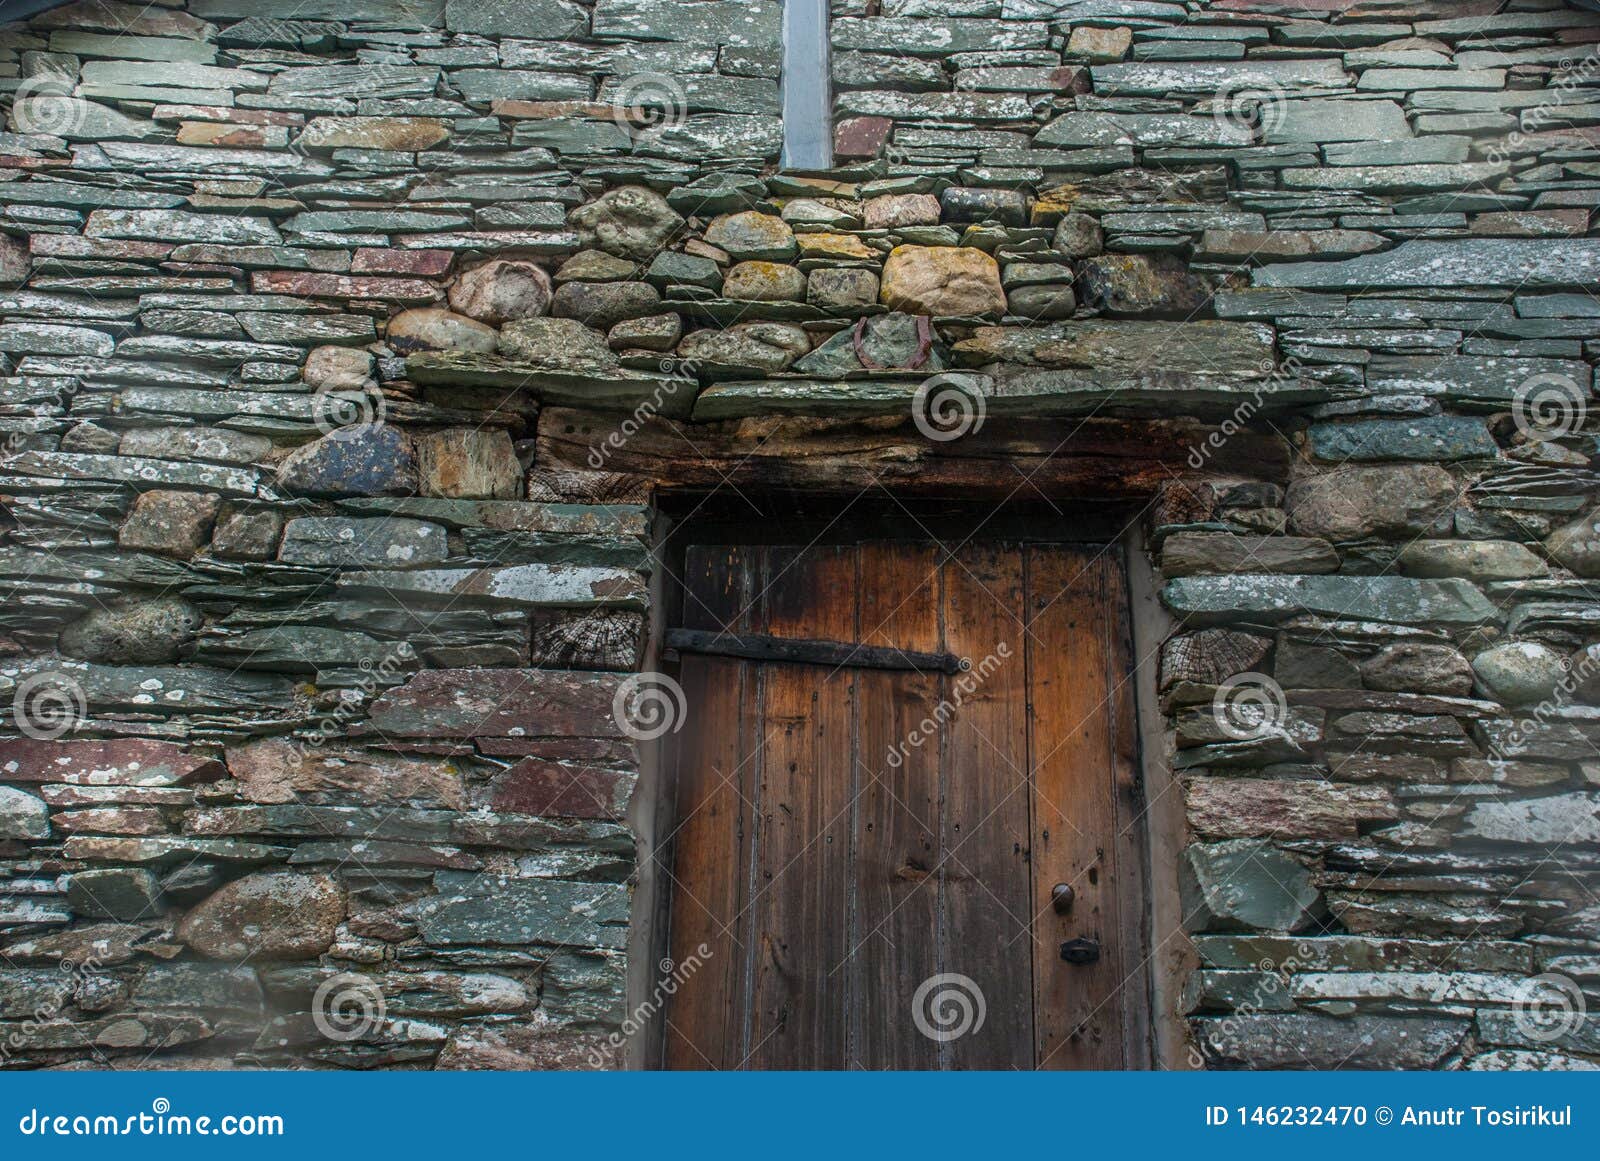 Ancient Wooden Door in Stone Wall Stock Photo - Image of wooden, door ...